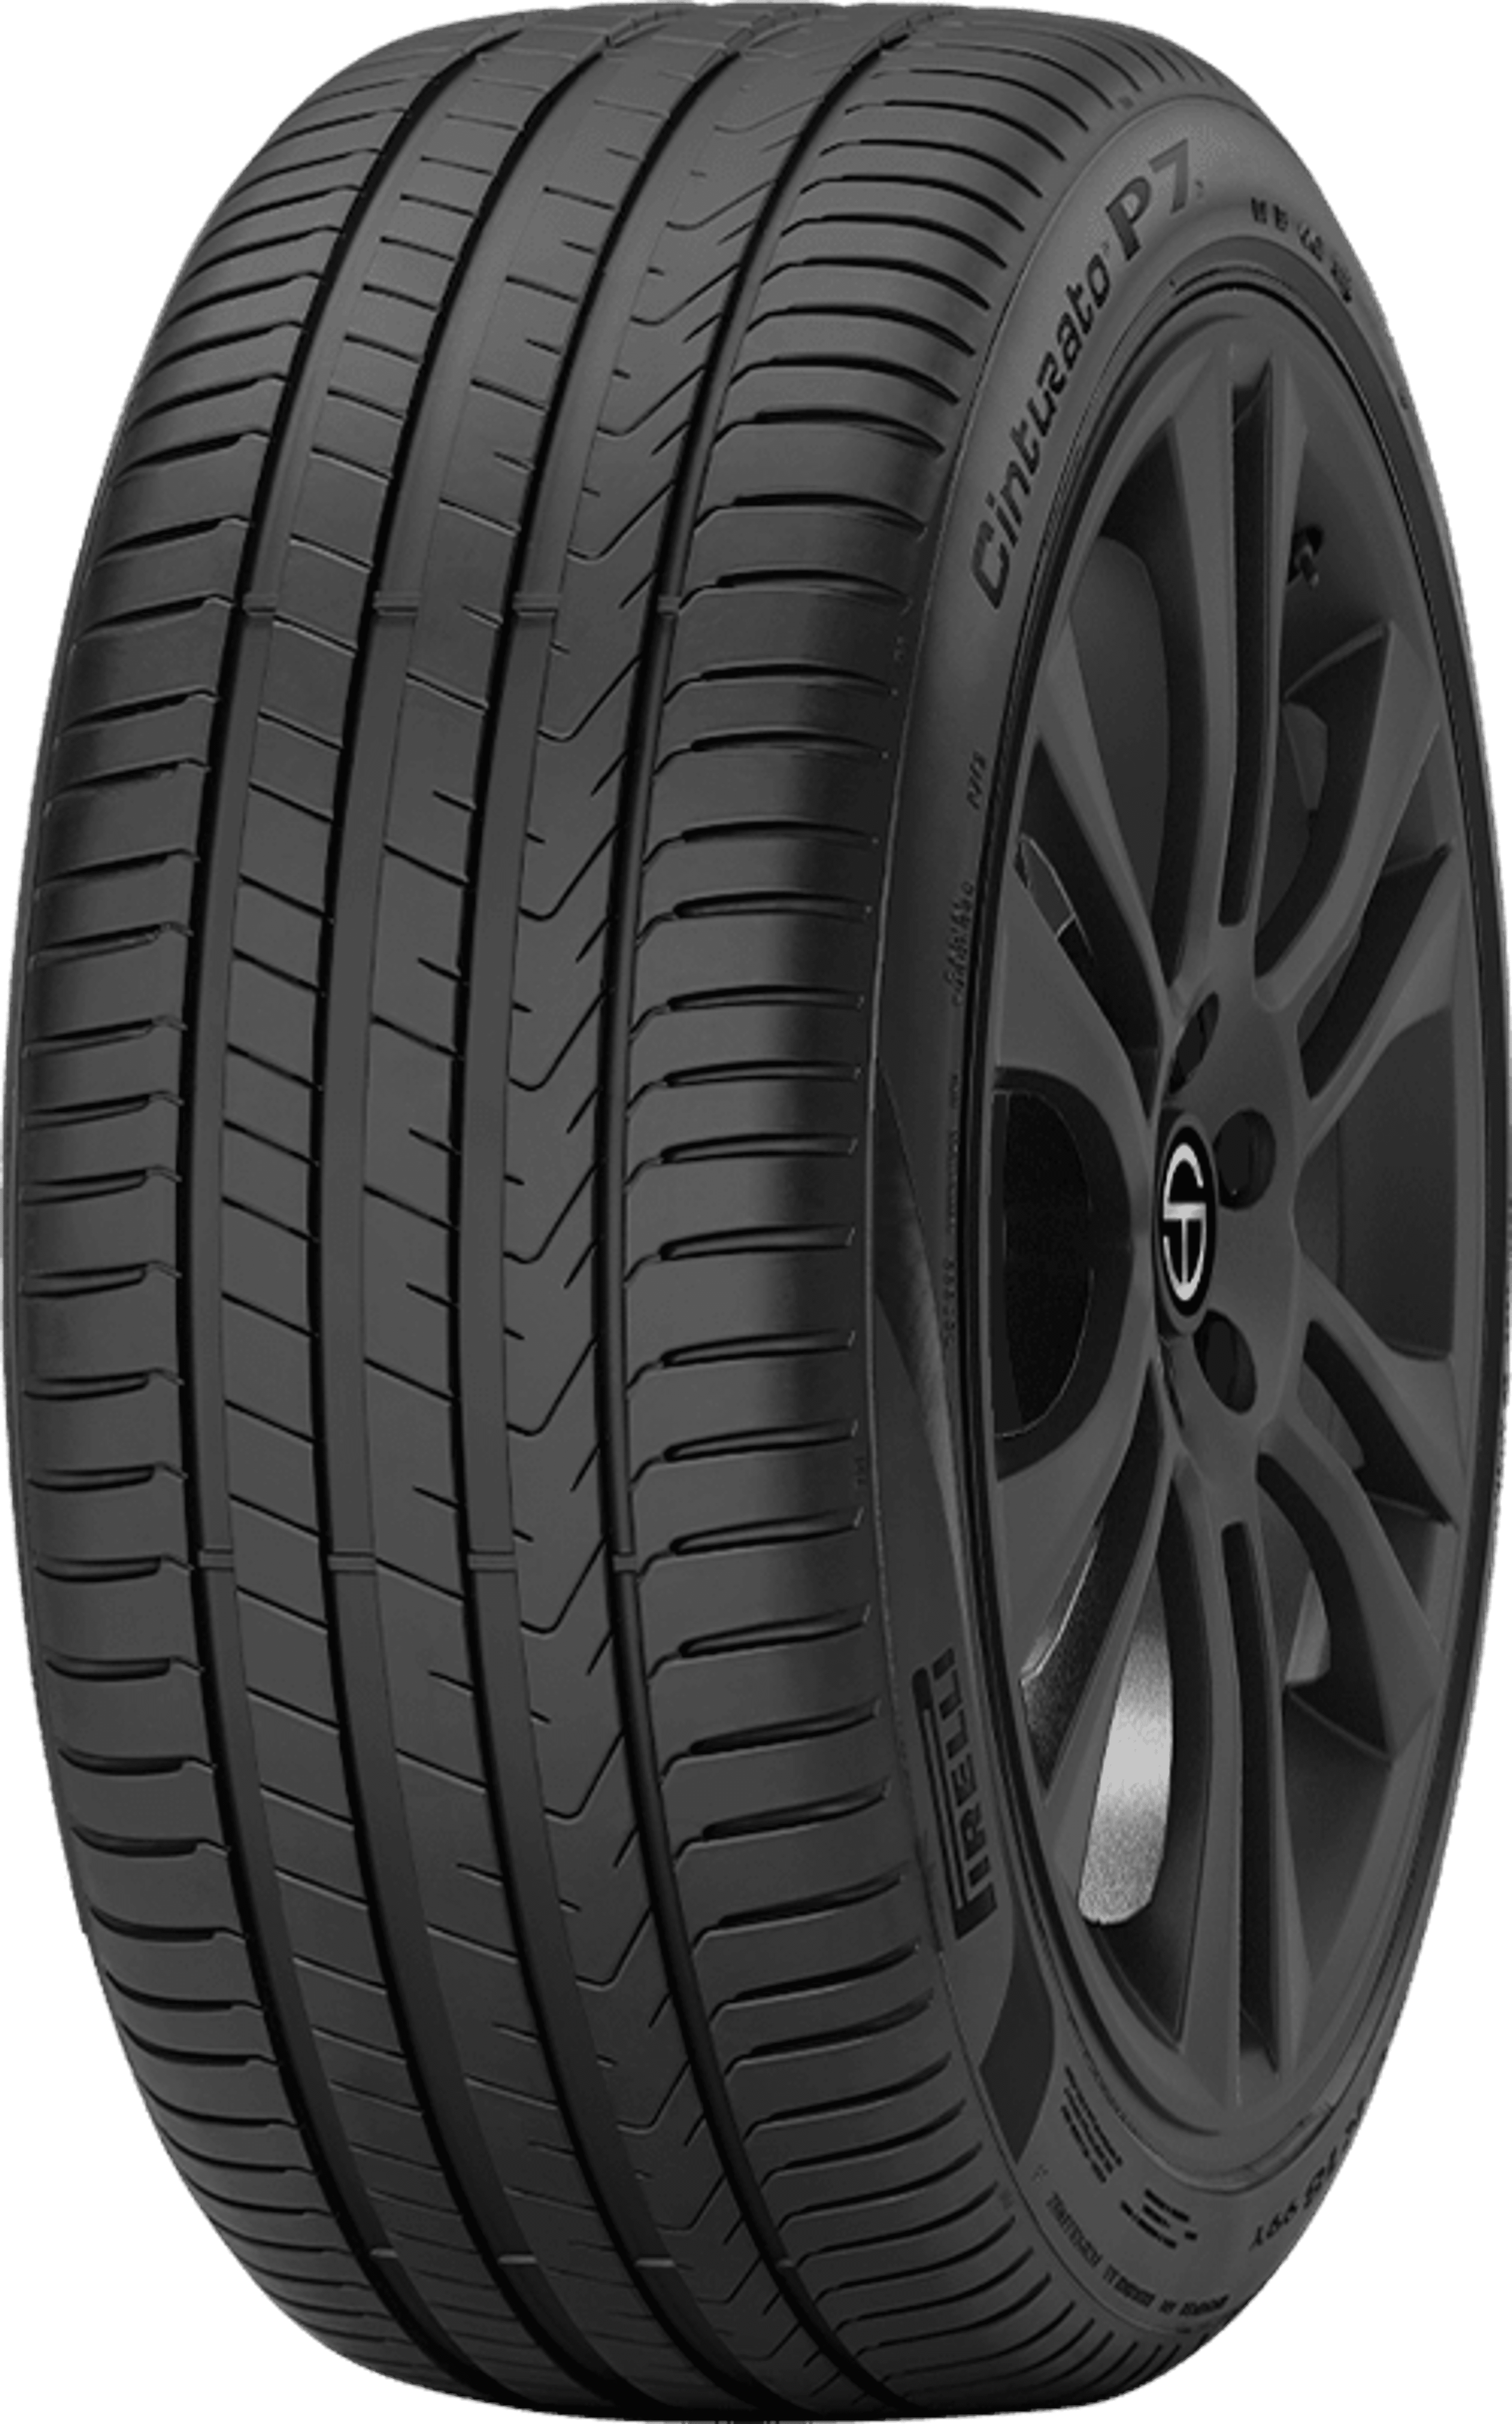 Buy Pirelli Cinturato P7 SimpleTire Online (P7C2) Tires 